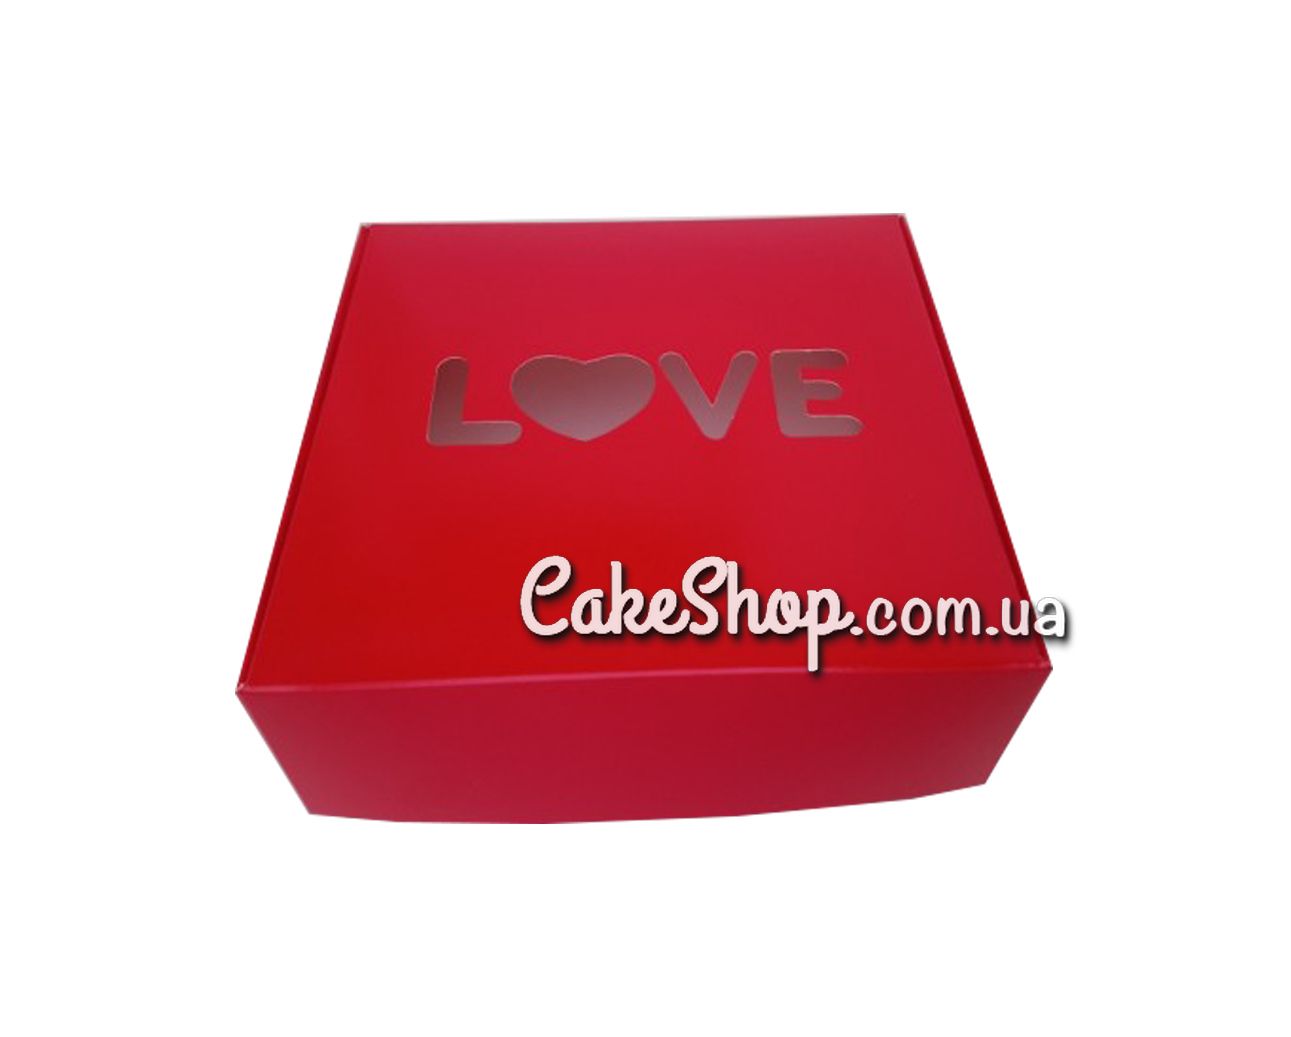 ⋗ Коробка для пряников, макаронс Love Красная, 15х15х5 см купить в Украине ➛ CakeShop.com.ua, фото